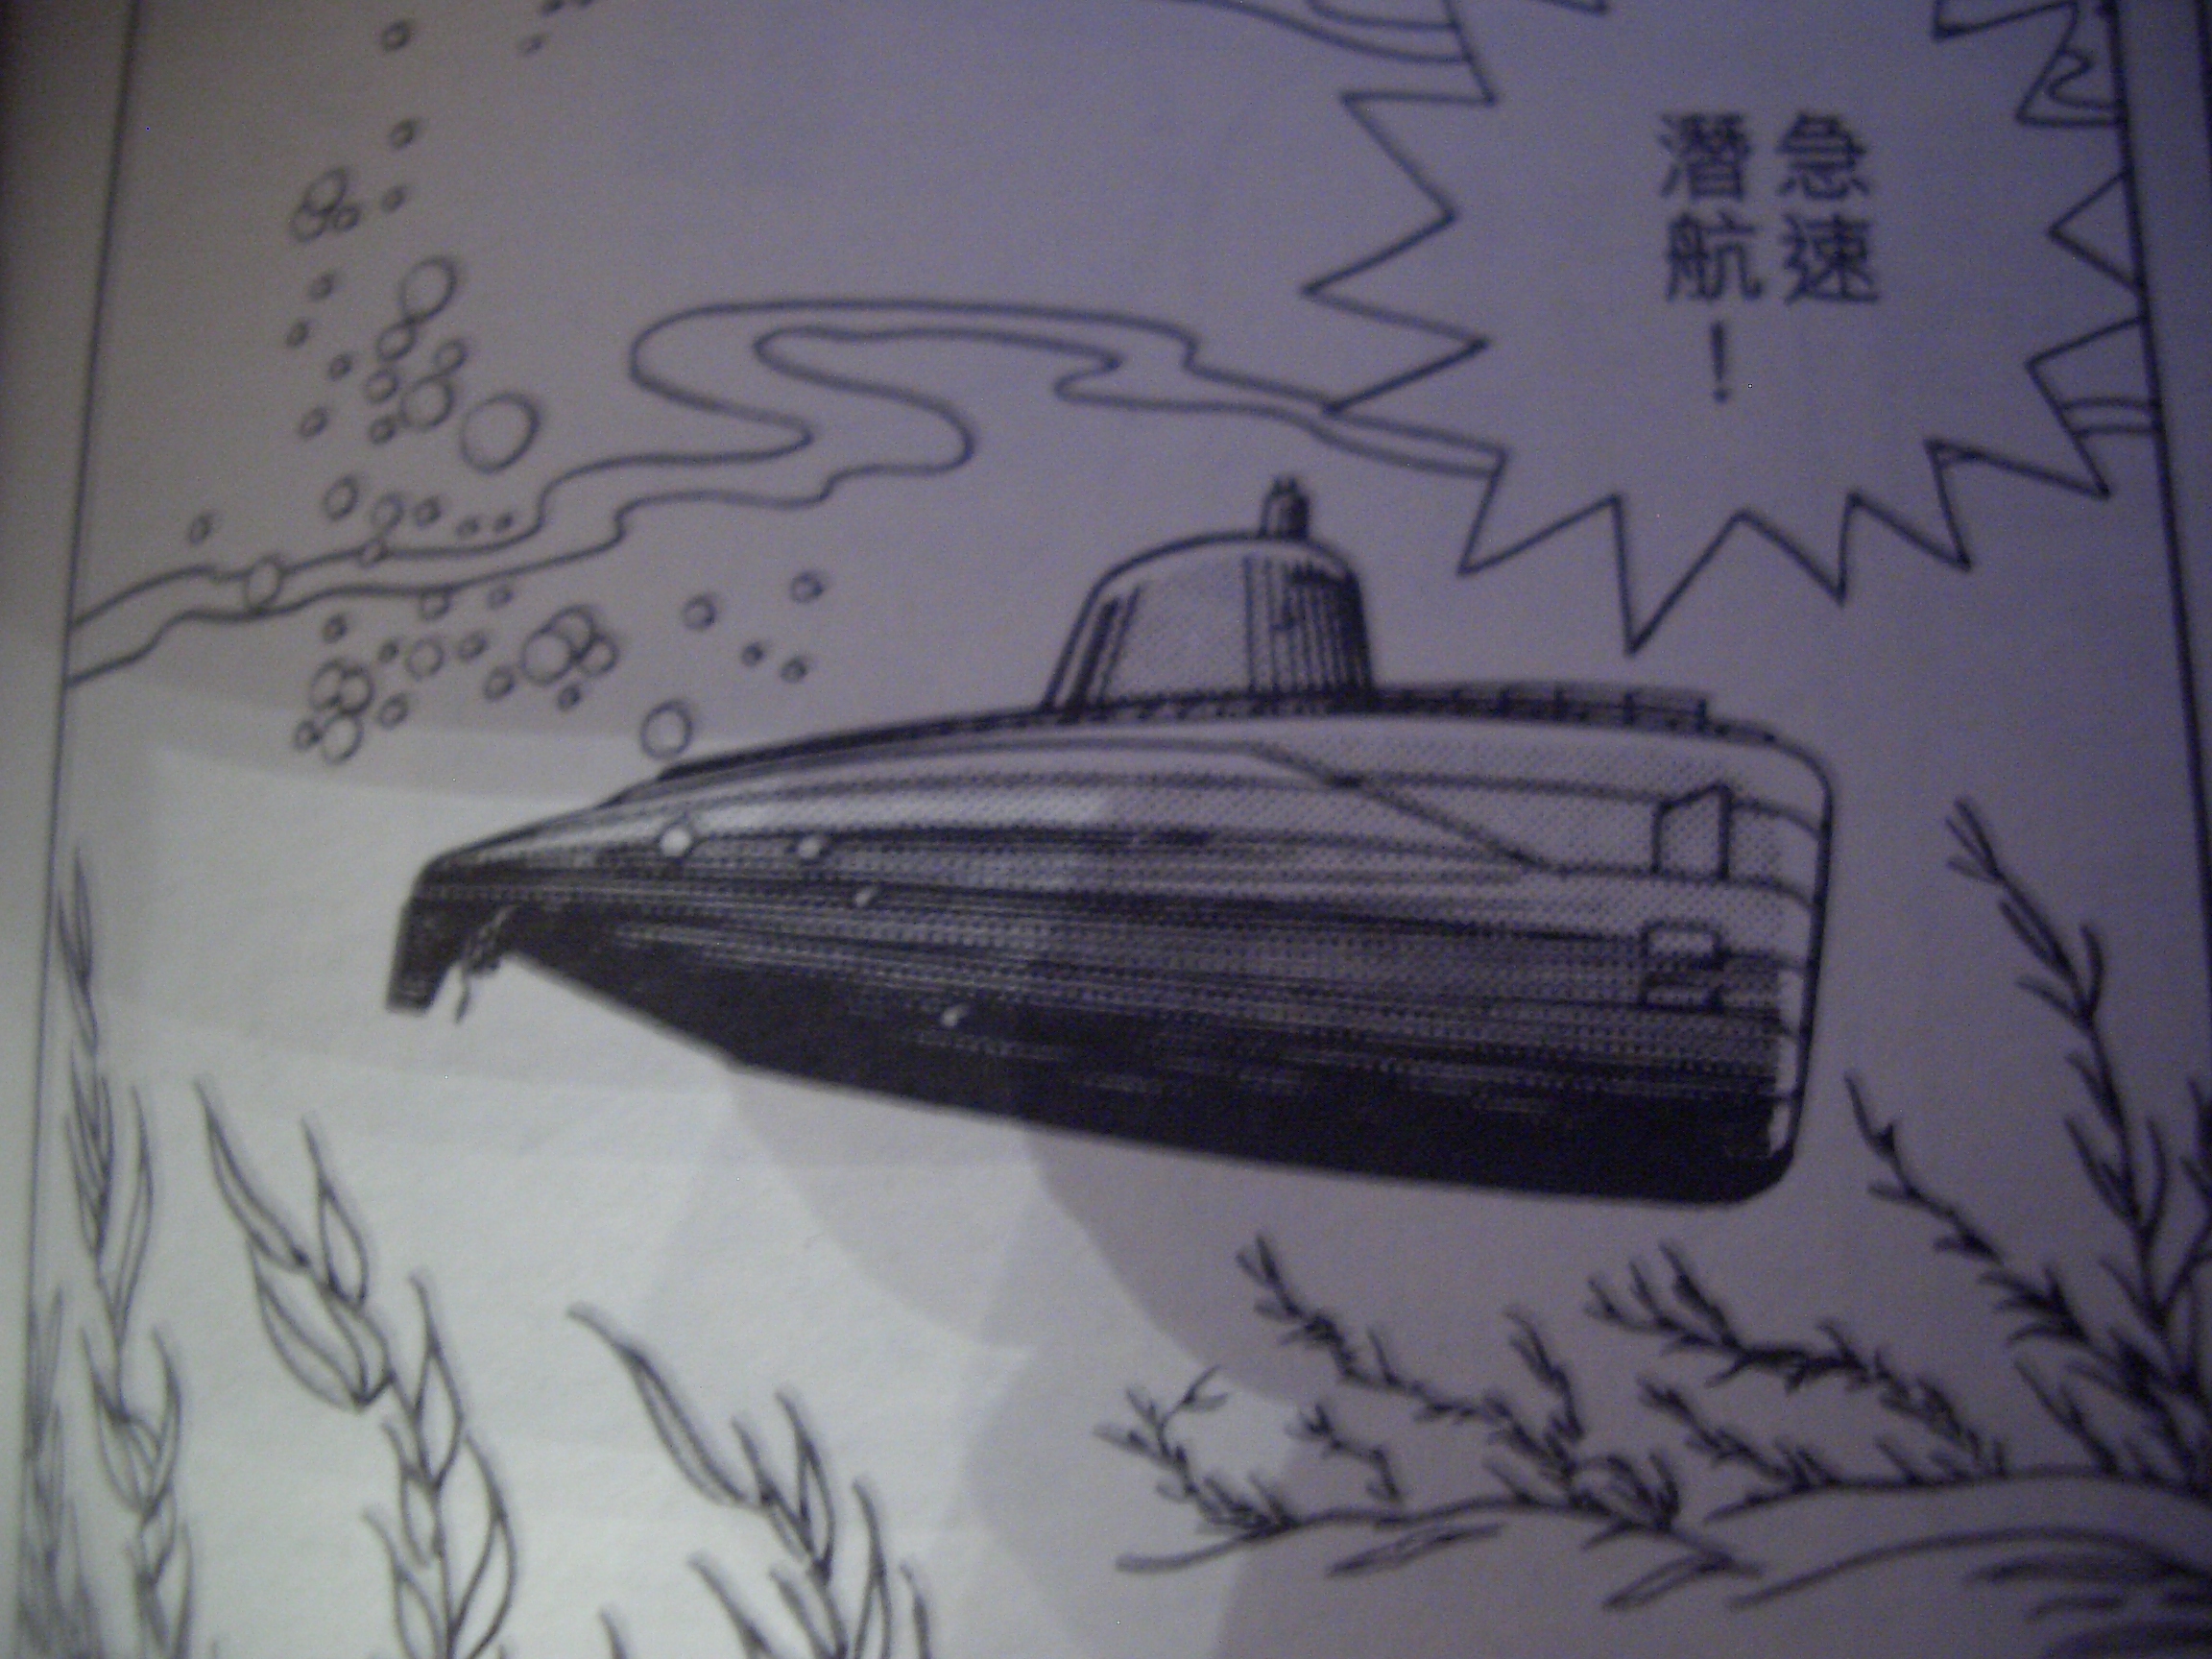 附有导弹的原子潜水艇